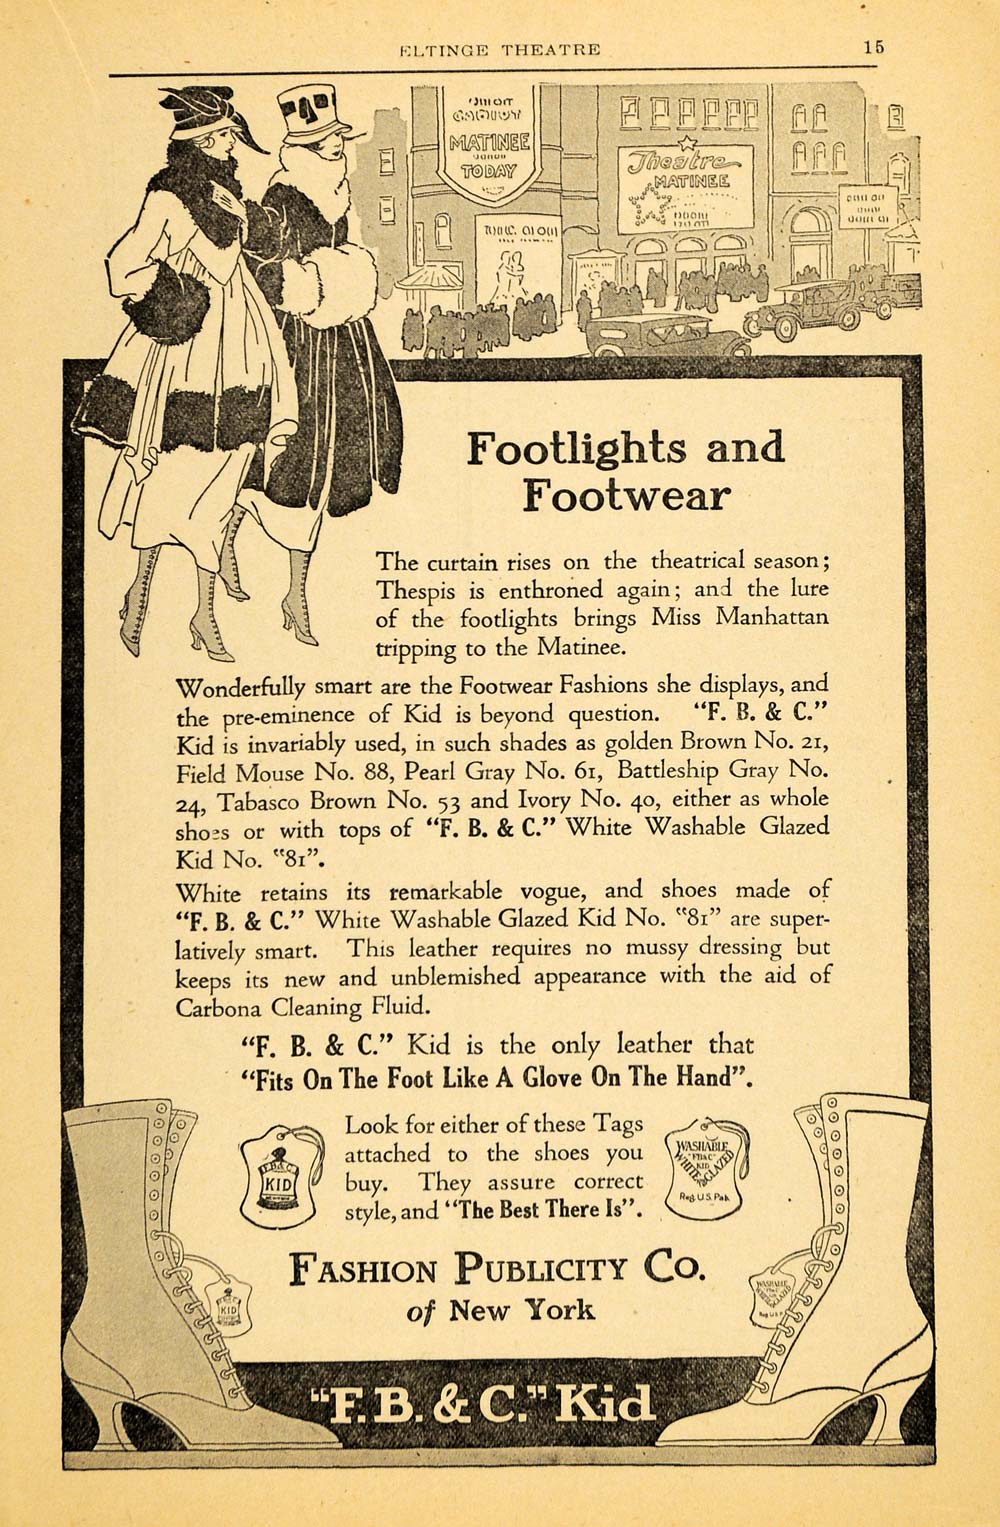 1917 Ad Fashion Publicity Footwear Shoe Boot F.B.C. Kid - ORIGINAL THR1